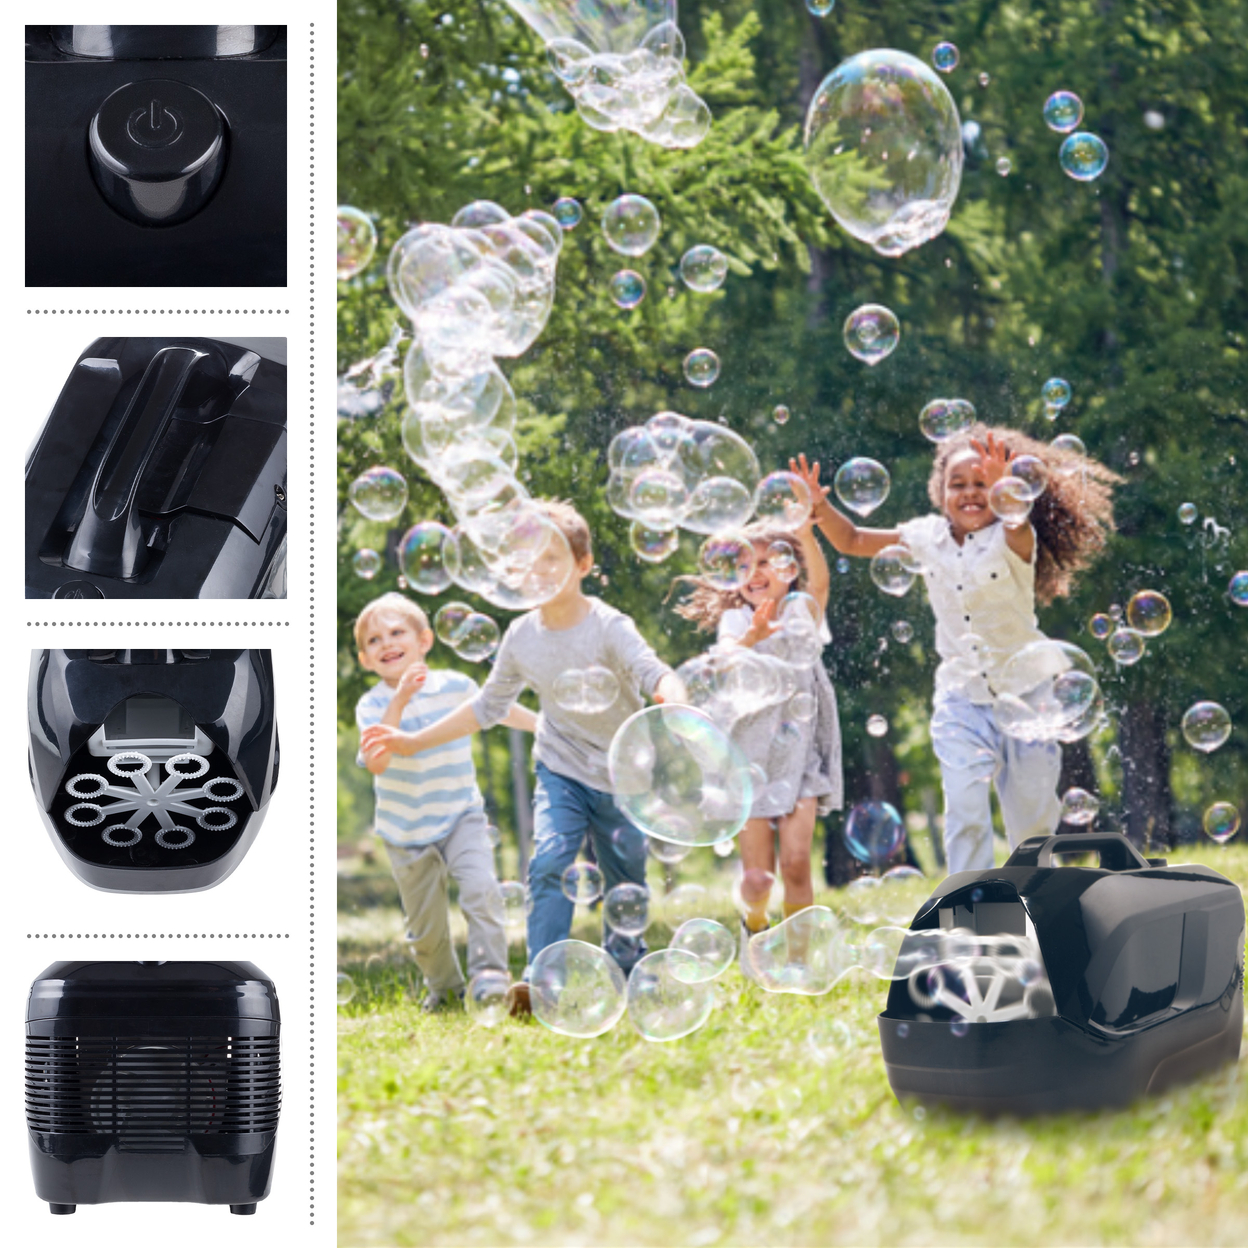 Portable Bubble Machine 2-Speed Bubble Maker Blower Bubbles For Parties